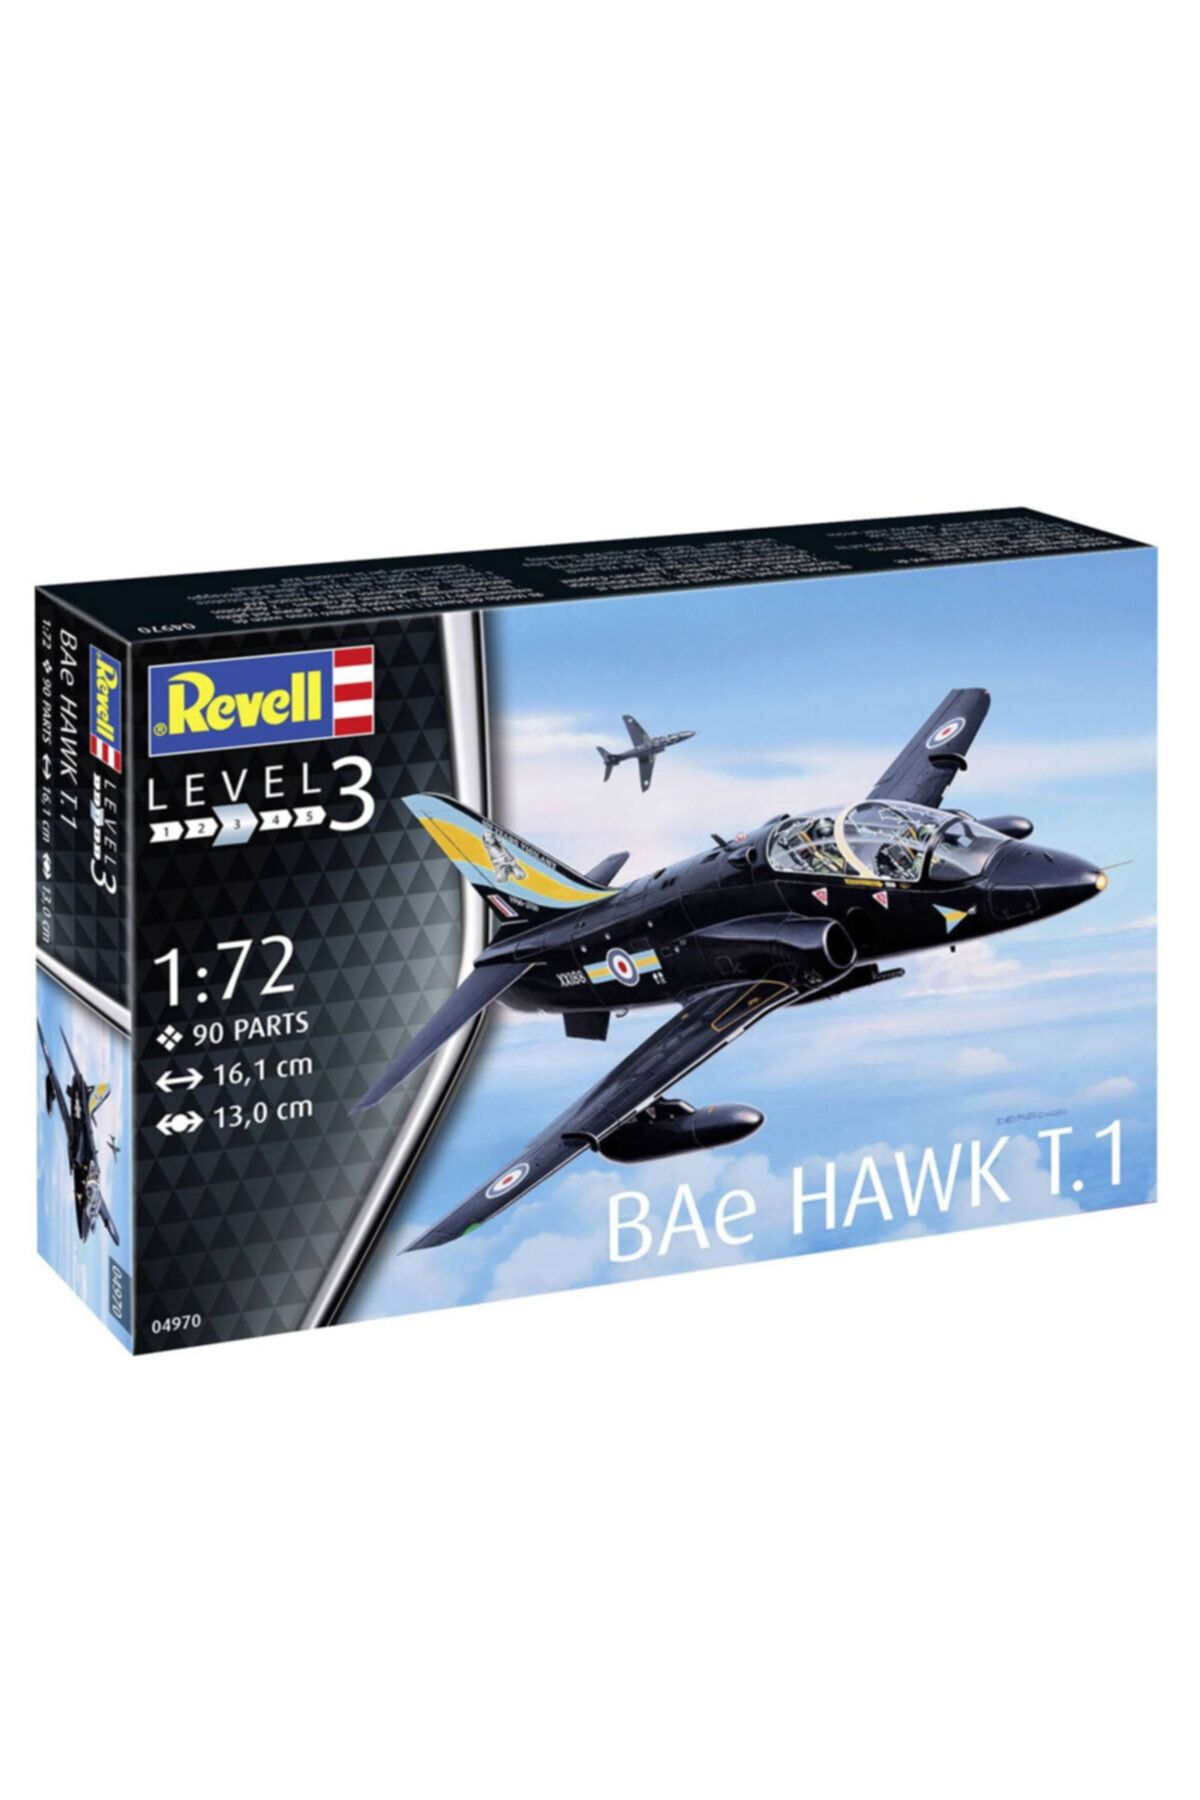 REVELL Maket Bae Hawk T 1 Vsu04970